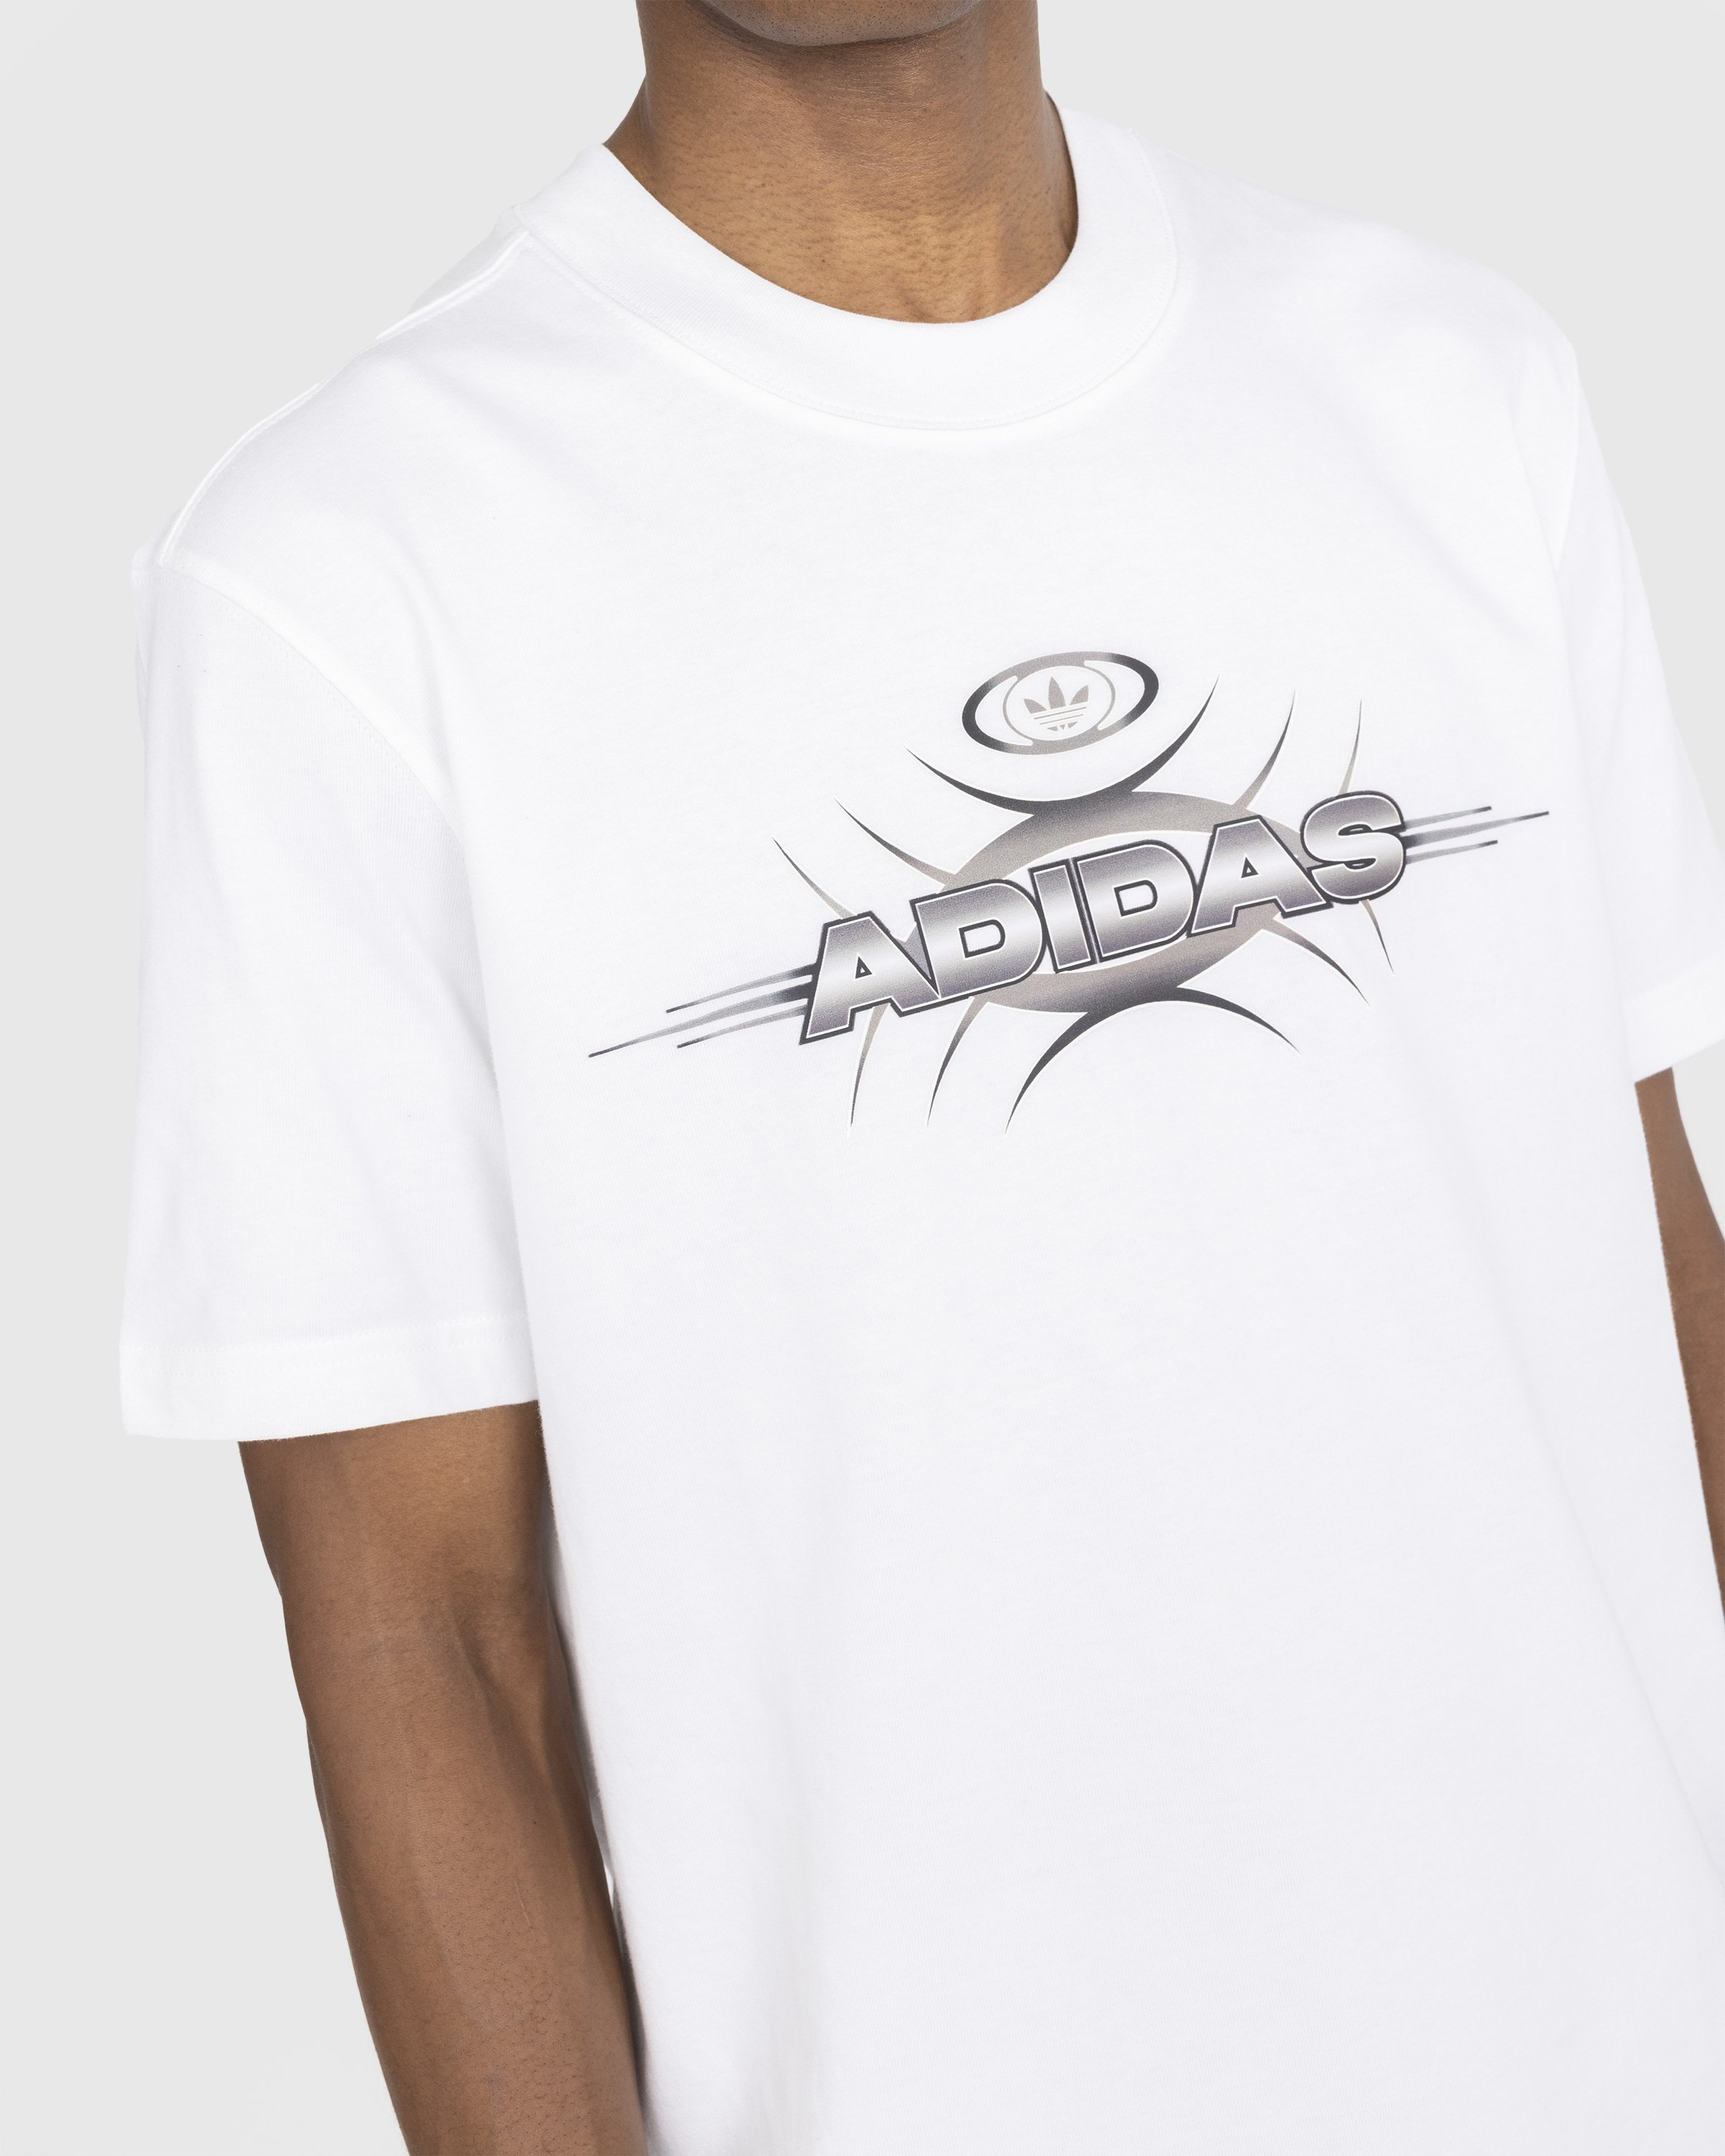 Adidas - Graphic Logo T-Shirt White - Clothing - White - Image 4